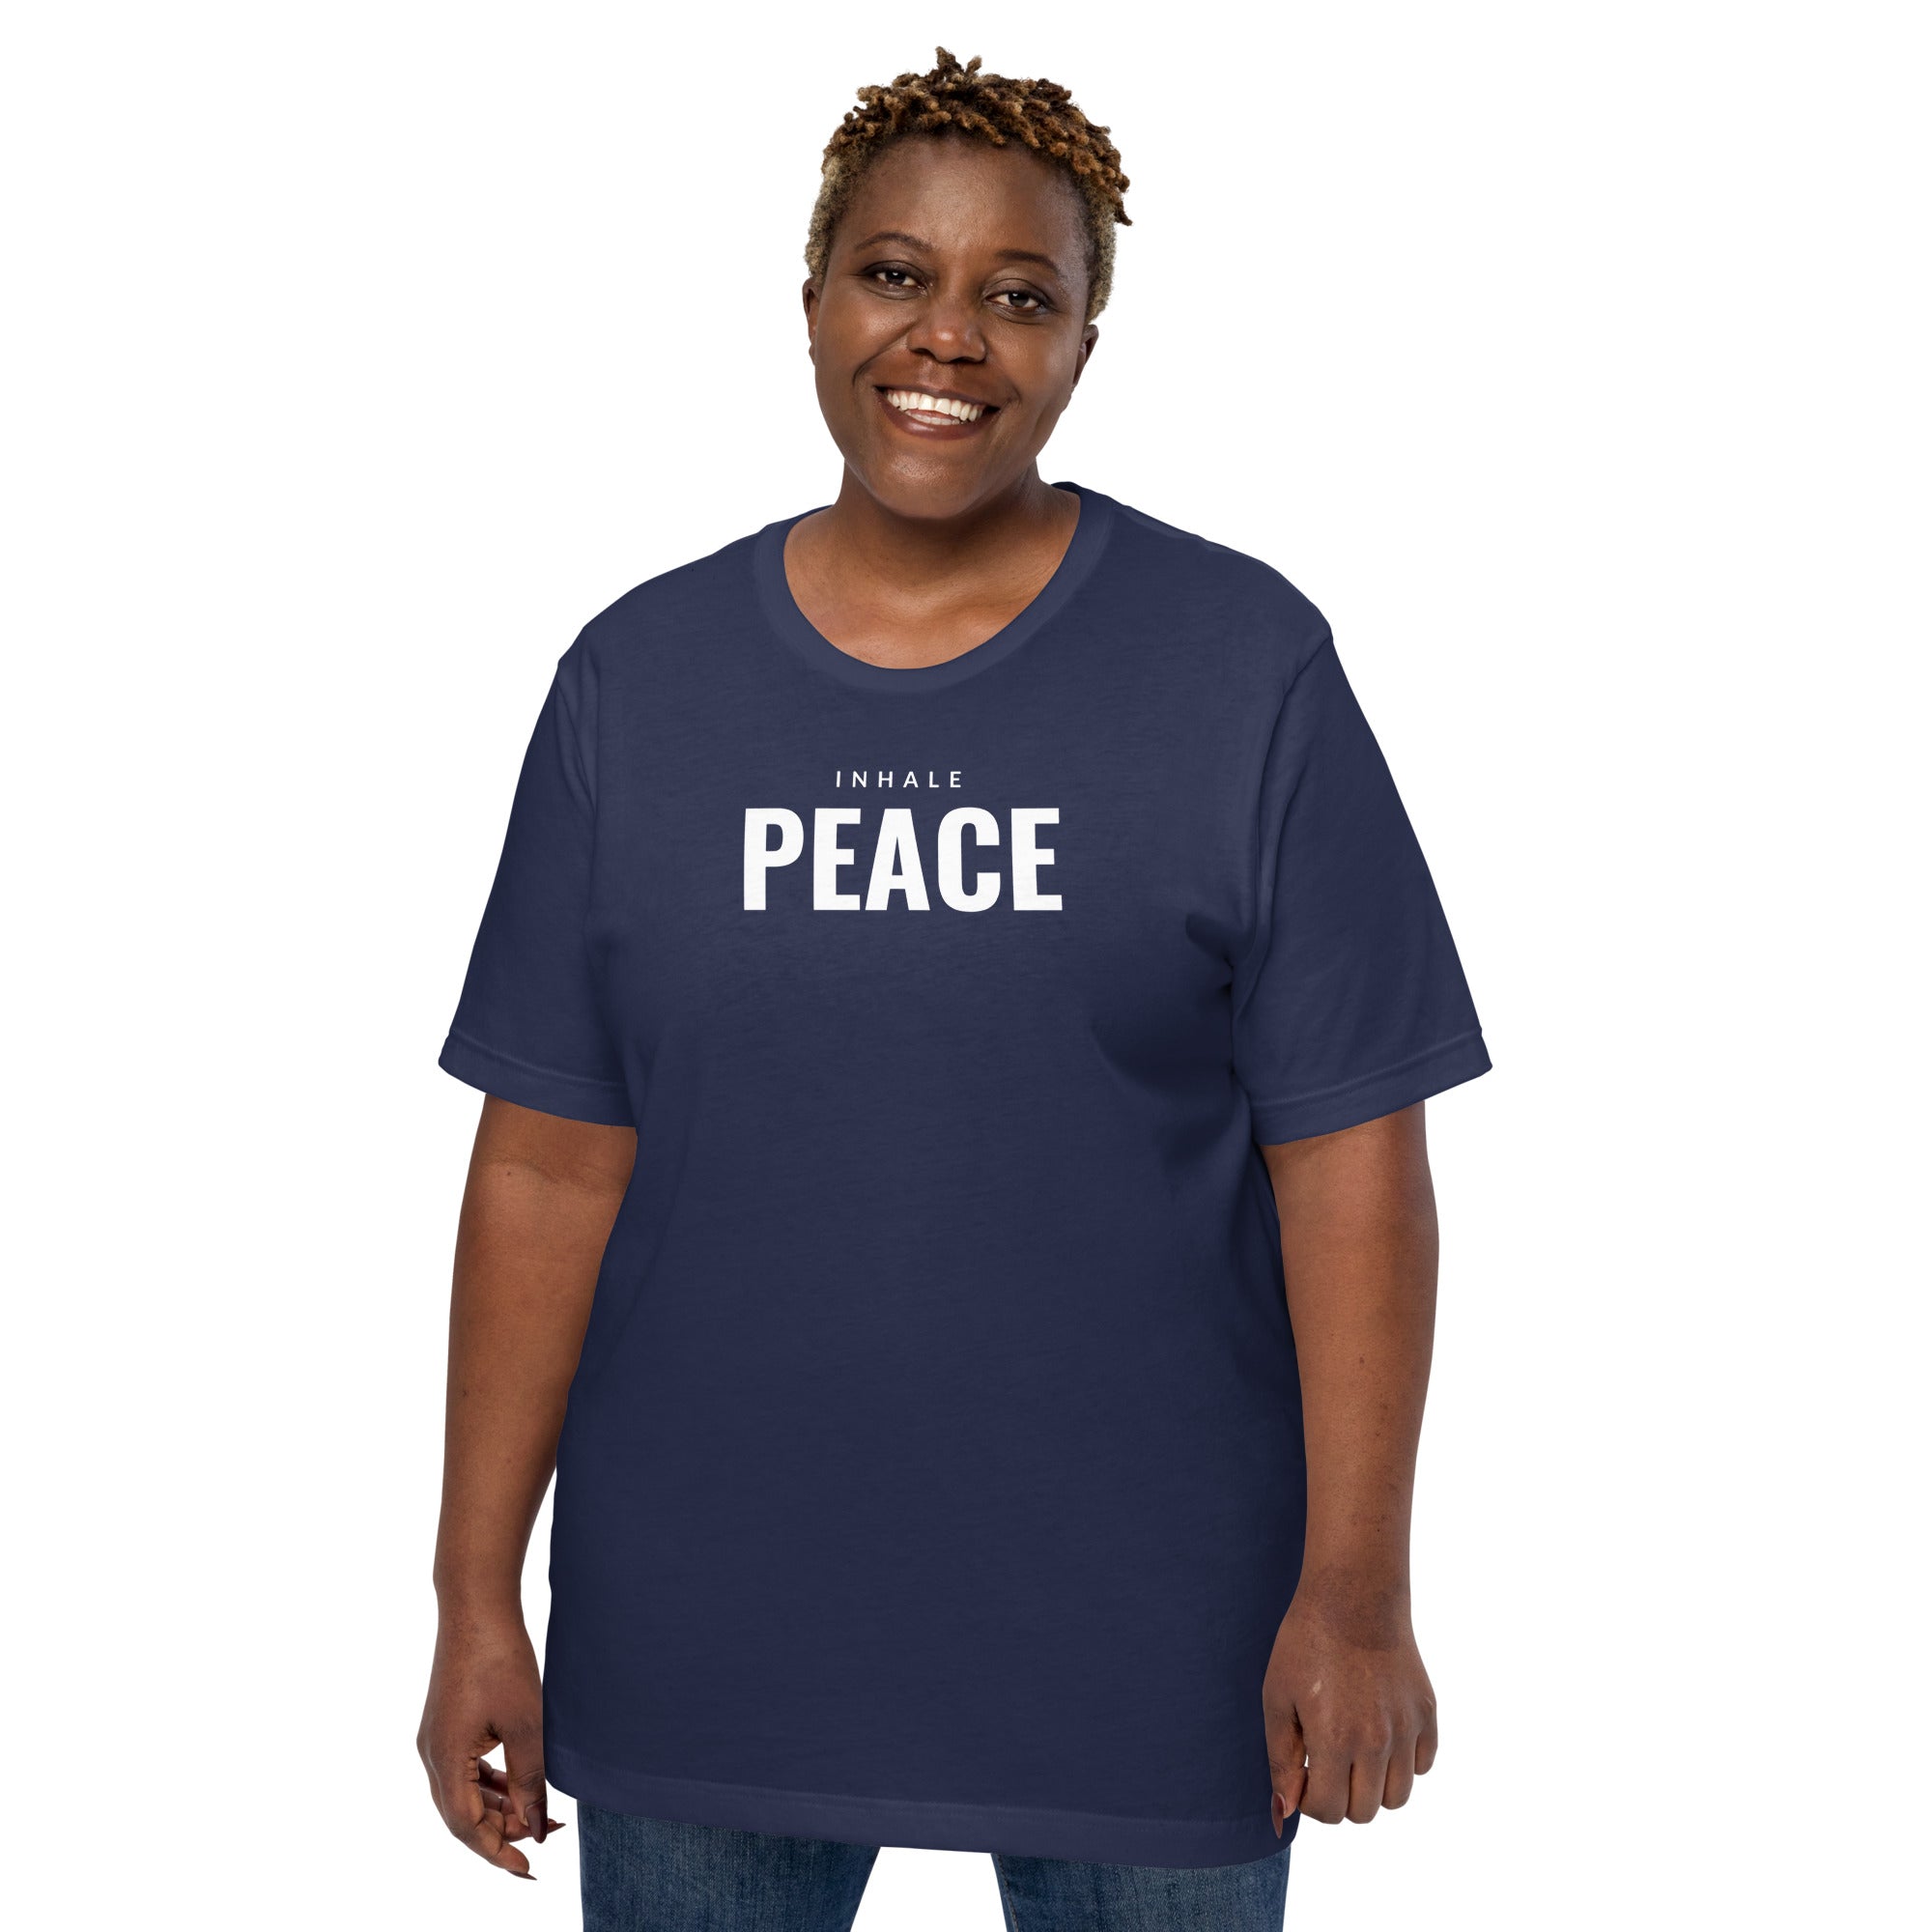 Inhale Peace Unisex T-shirt